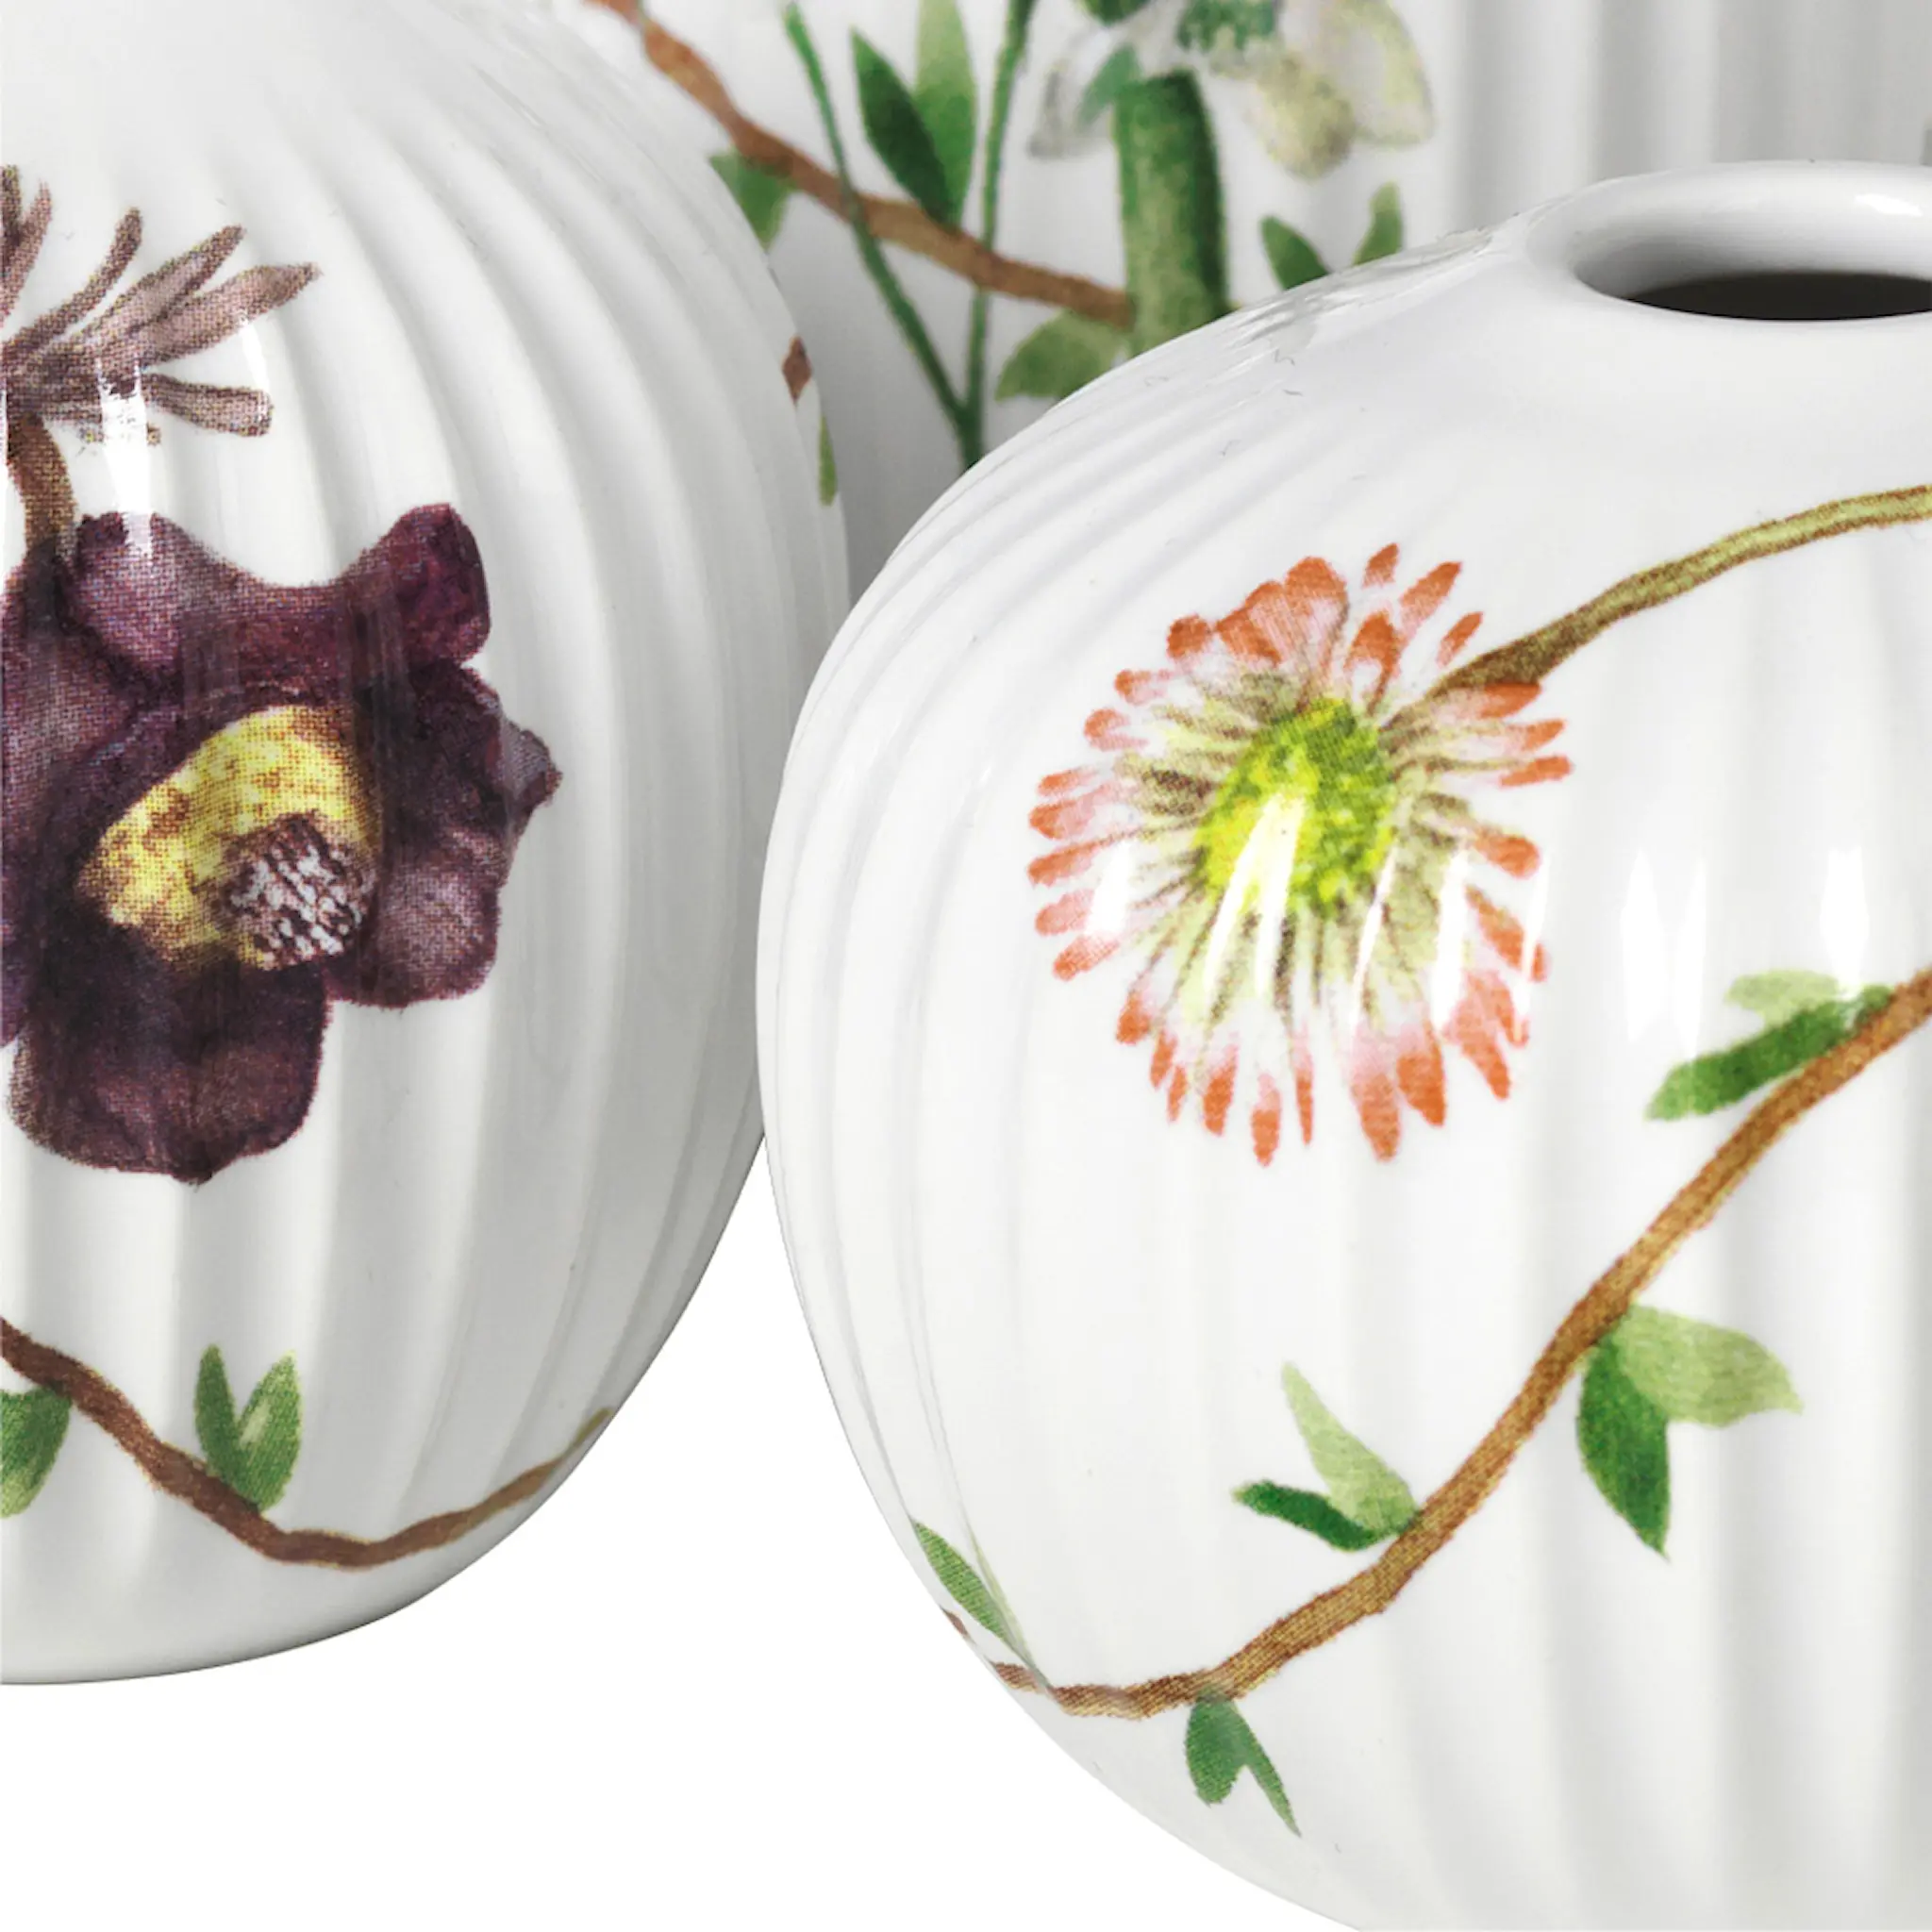 Kähler Hammershøi Spring vase 3 stk miniatyr hvit m/dekor